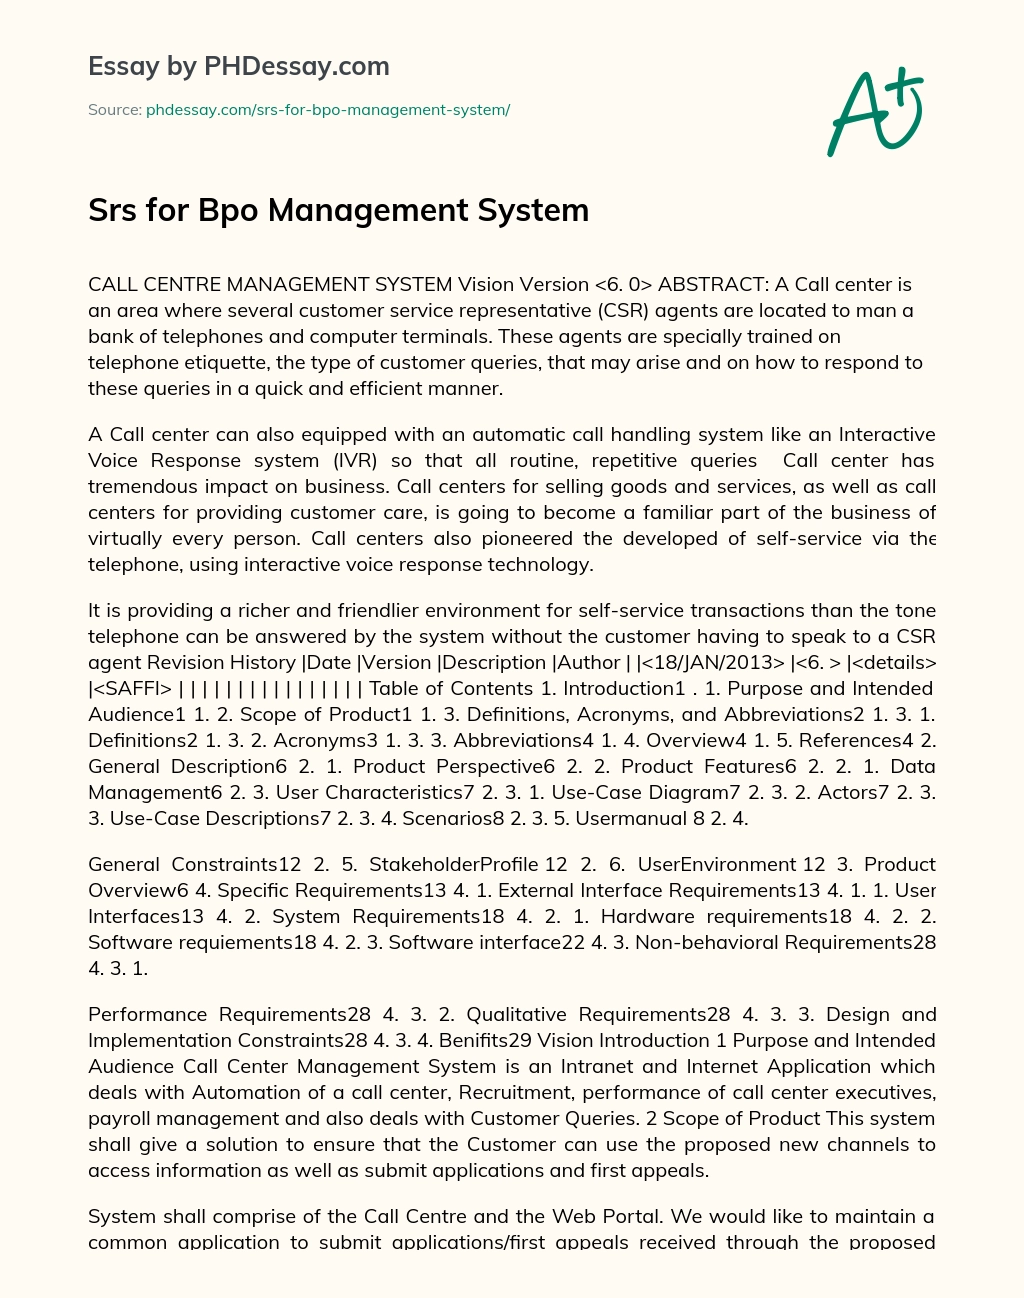 Srs for Bpo Management System essay